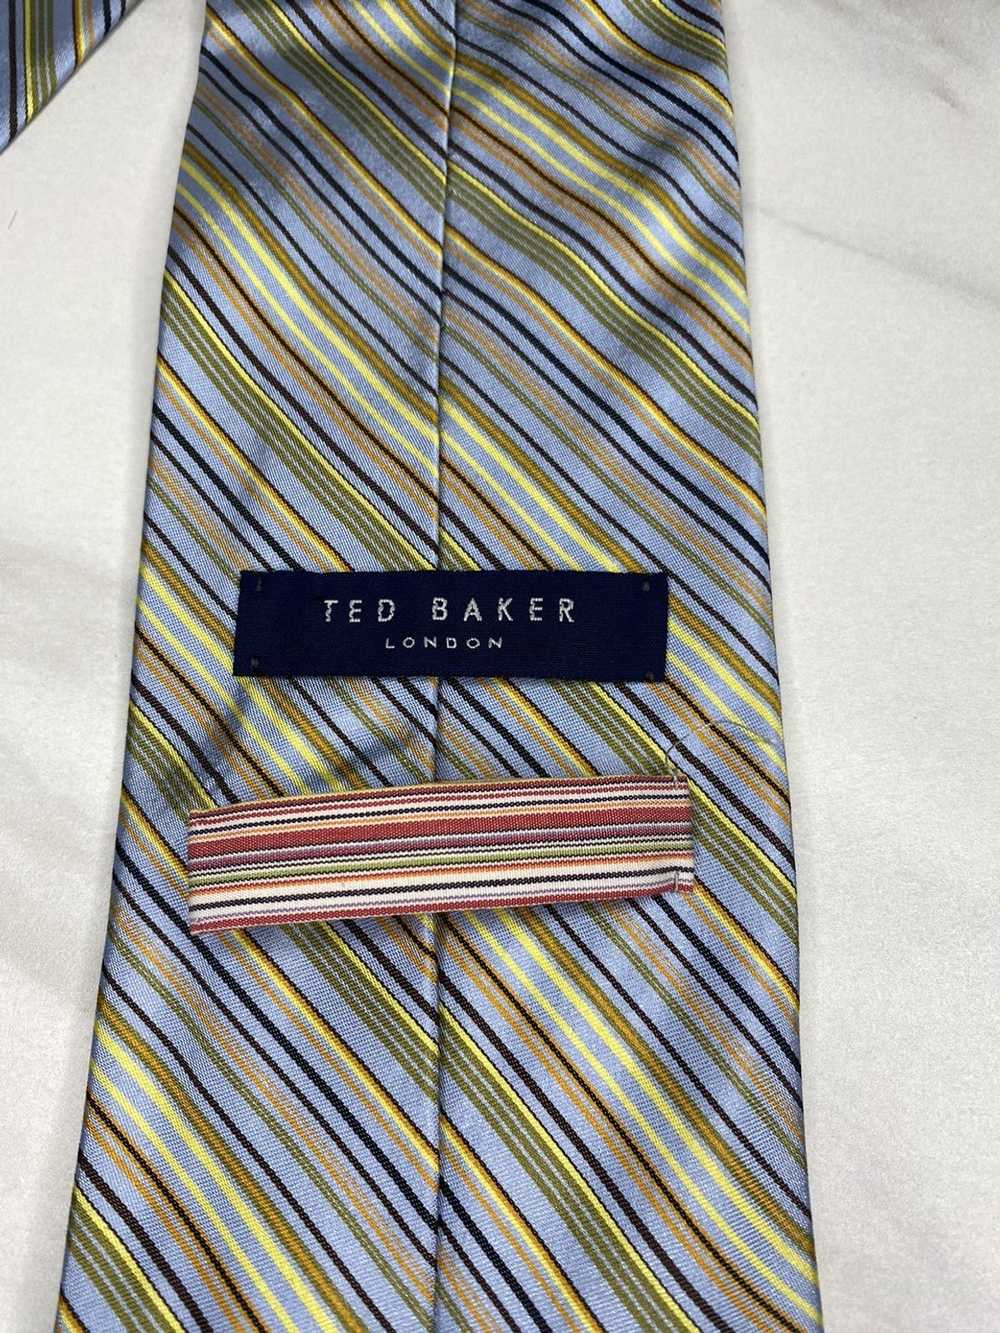 Ted Baker Ted Baker London 100% silk necktie - image 2